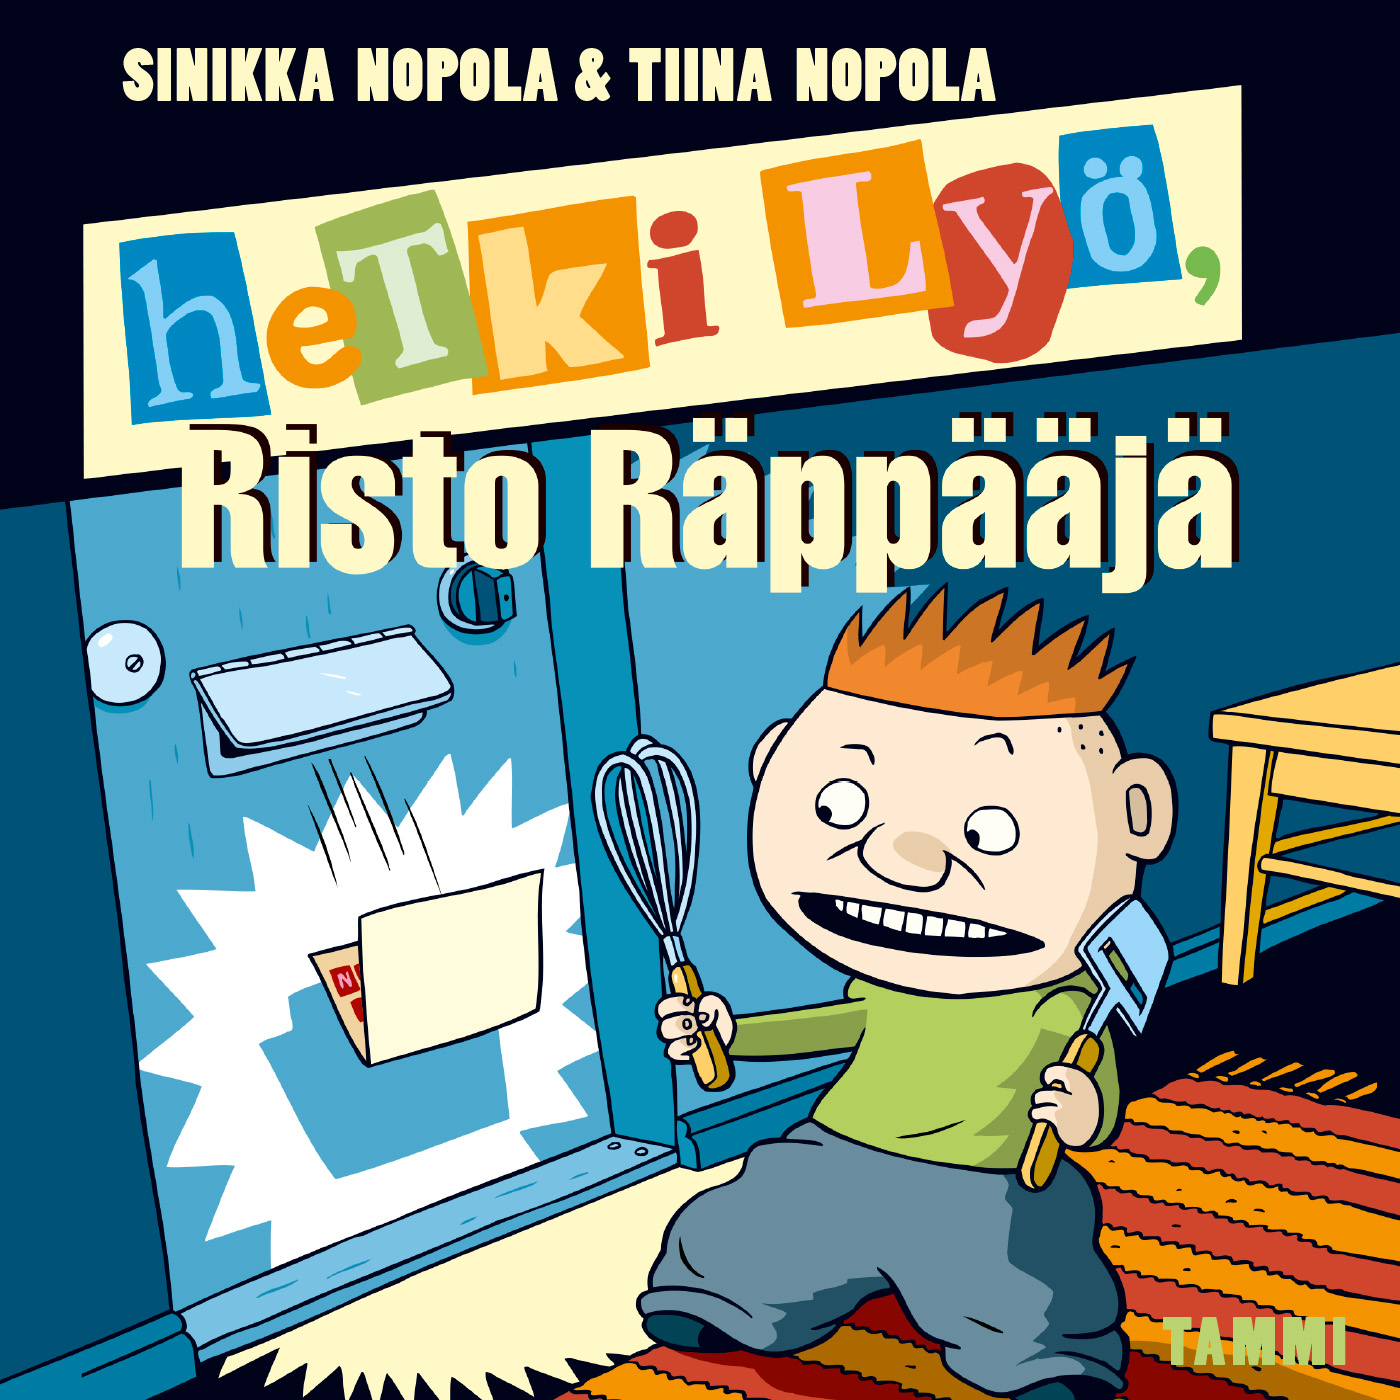 Nopola, Sinikka - Hetki lyö, Risto Räppääjä, audiobook